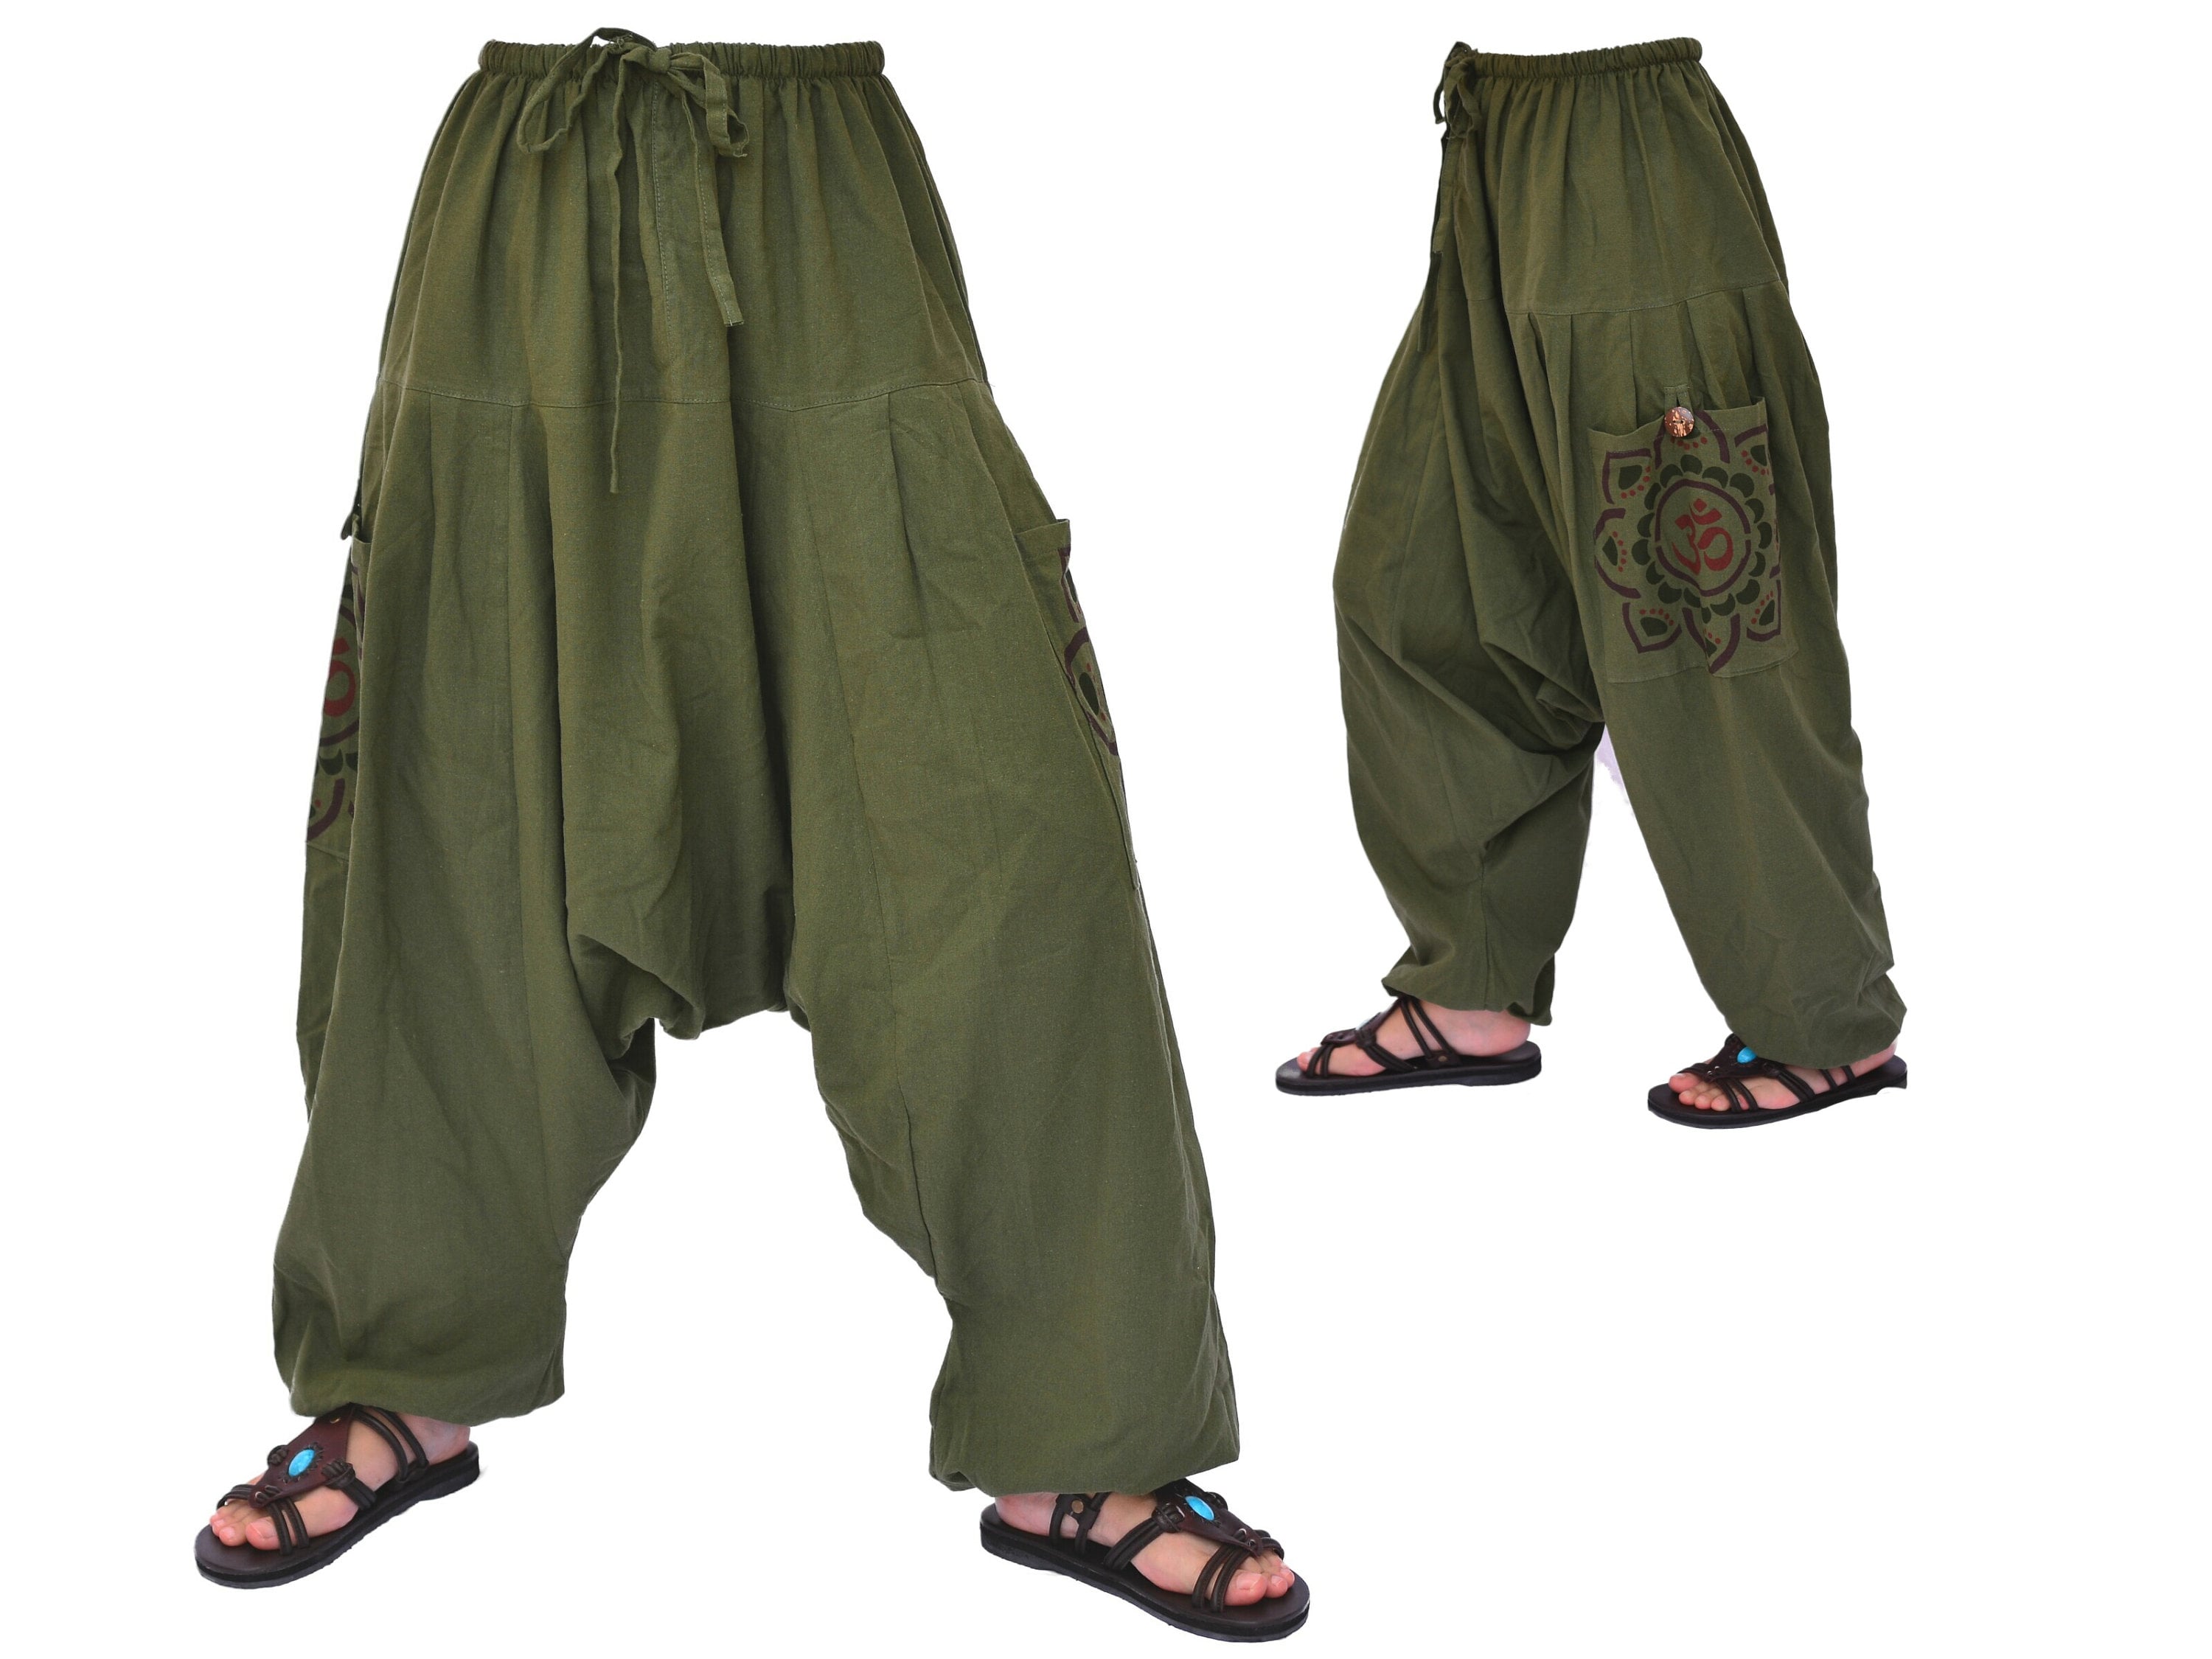 Plain Harem Pants in Cotton Bag, Pure Cotton Aladdin Pants, Yoga